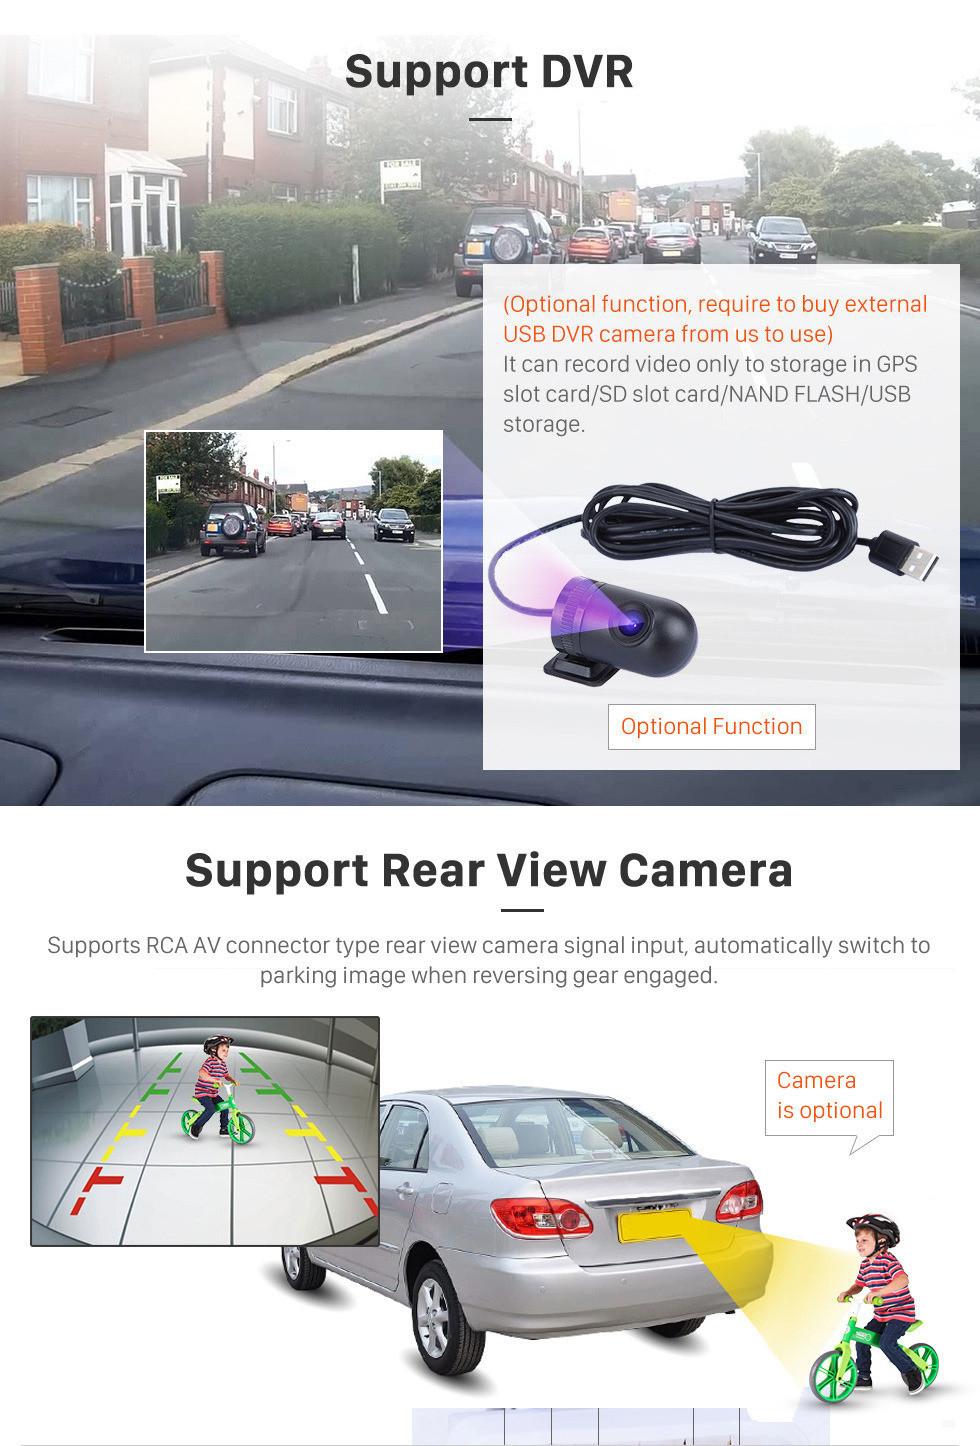 Seicane OEM 9-дюймовый Android 11.0 Радио для 2012 2013 2014 Toyota Innova Авто Кондиционер Bluetooth HD Сенсорный экран GPS-навигатор Carplay Поддержка USB 4G WI-FI Цифровое ТВ